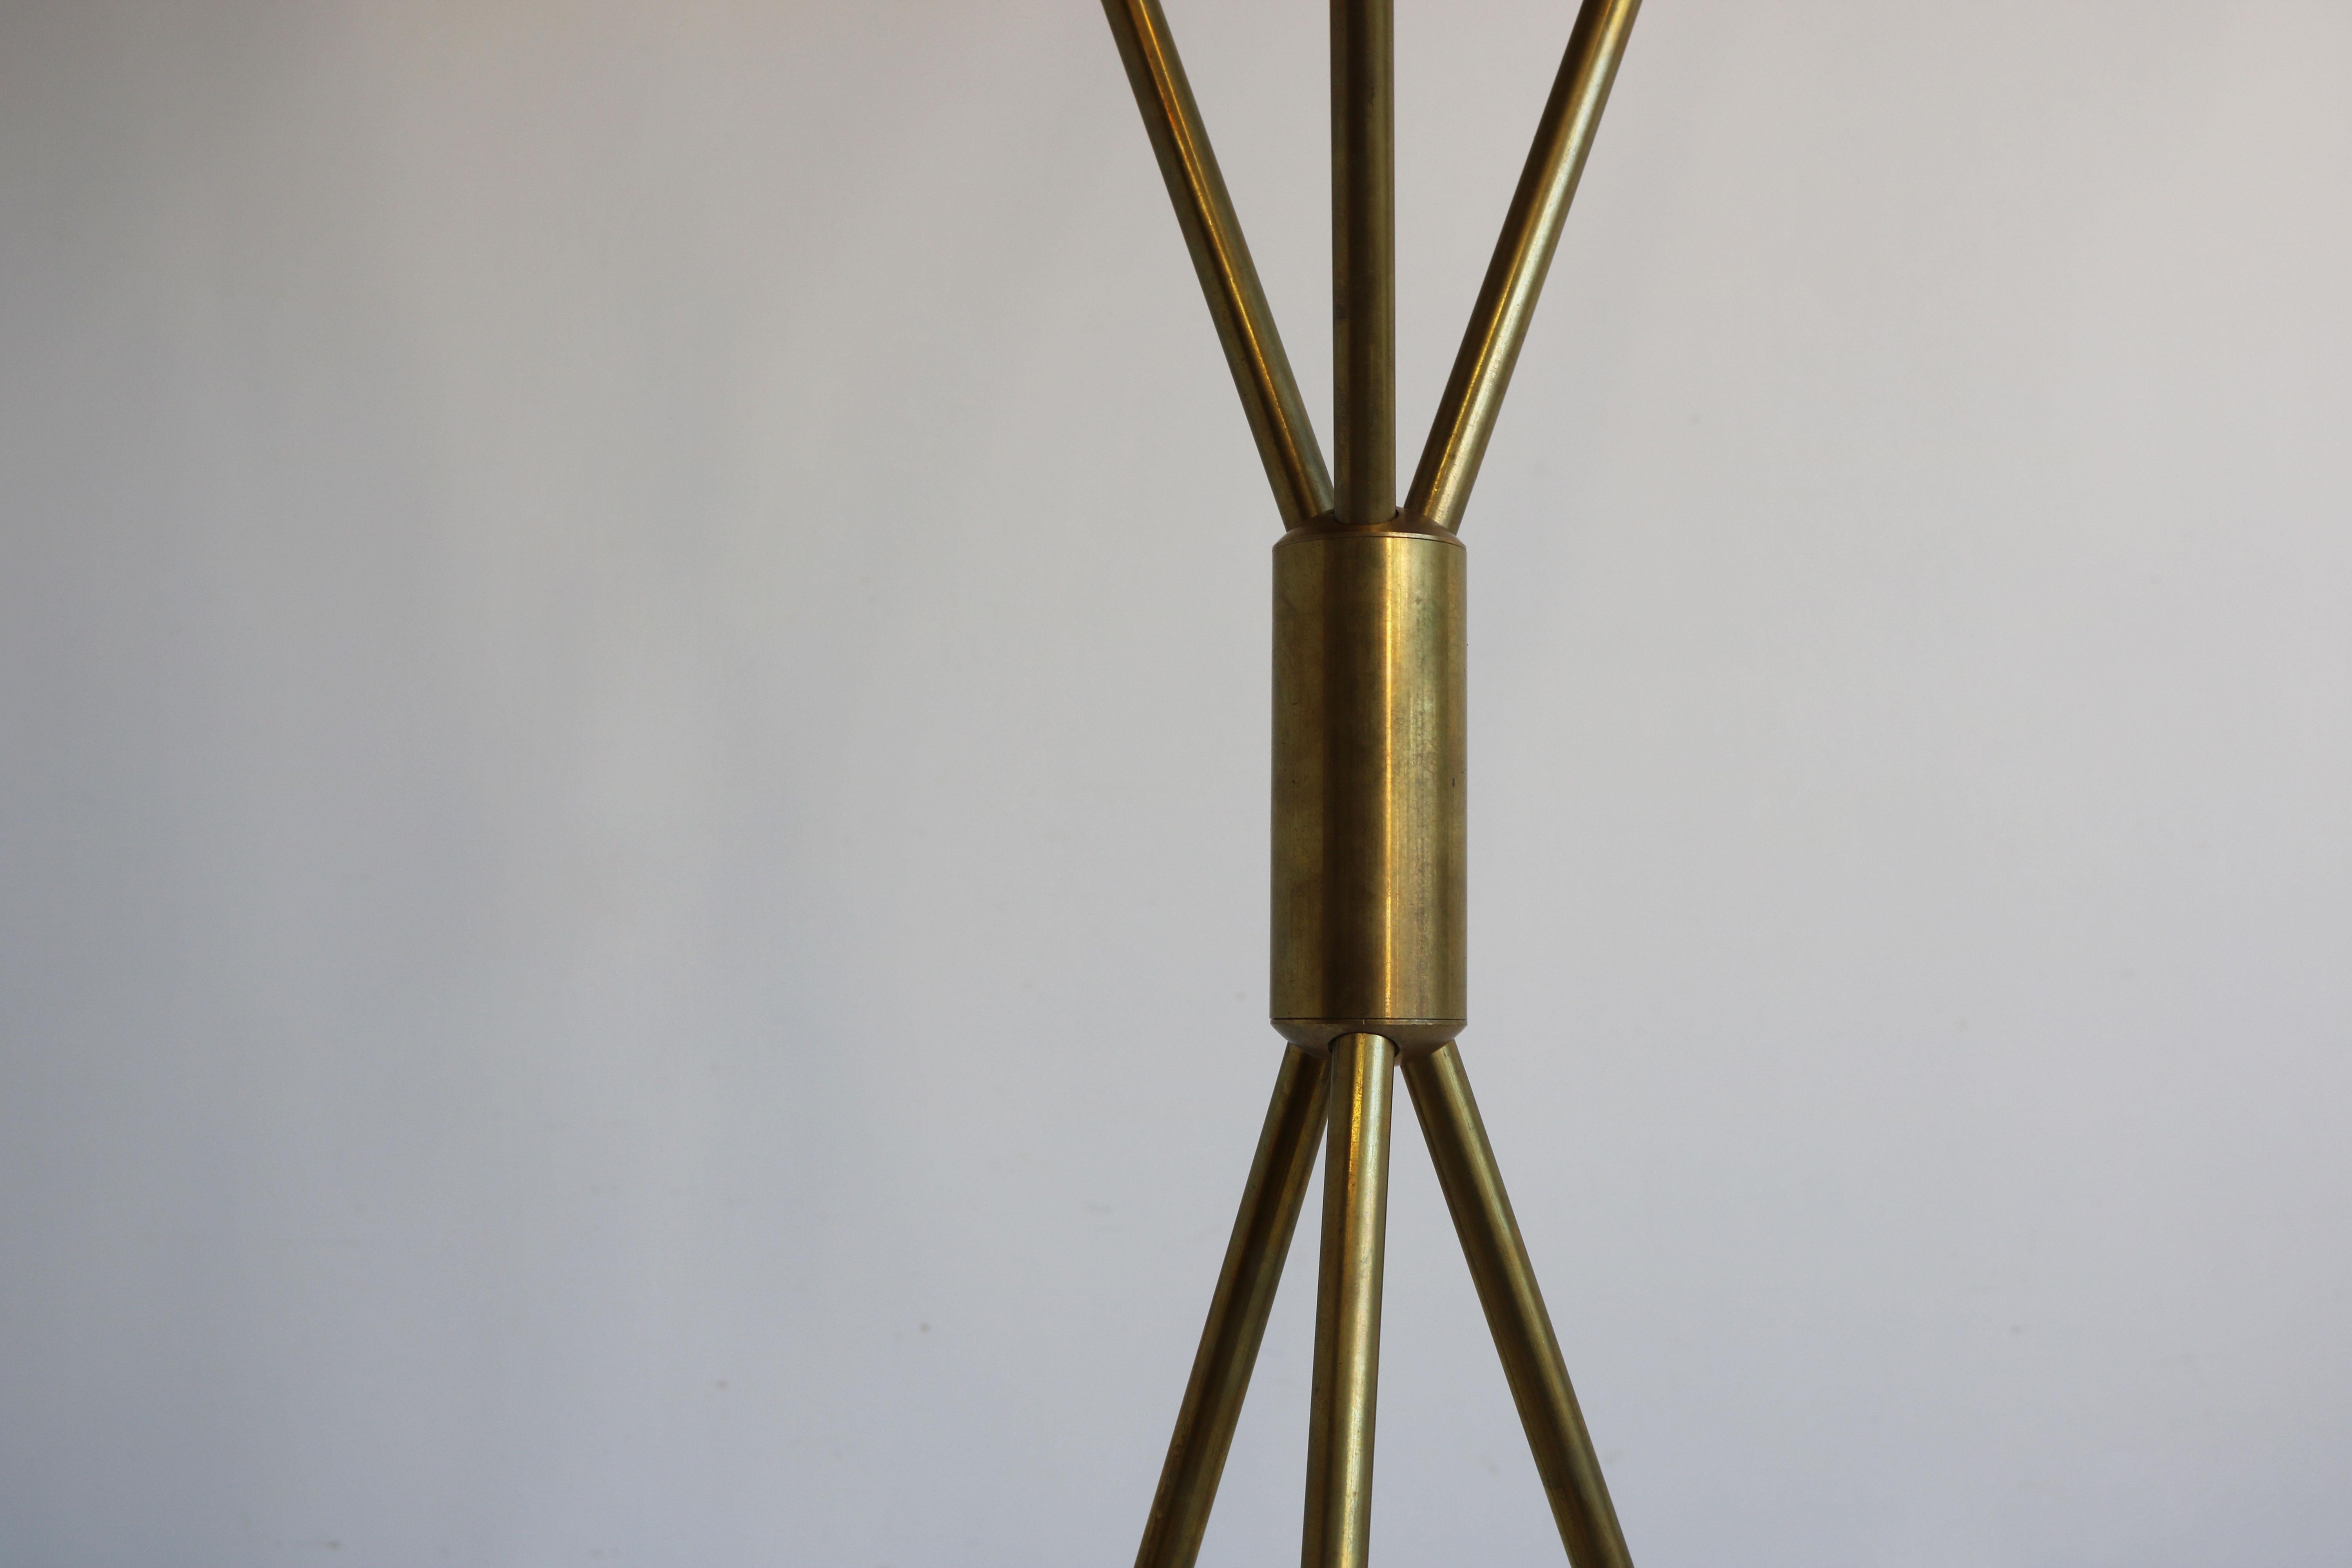 Mid-Century Modern 1 of 2 Italian Minimalist Design Floor Lamp Brass Mid-Century Stilnovo style 50s